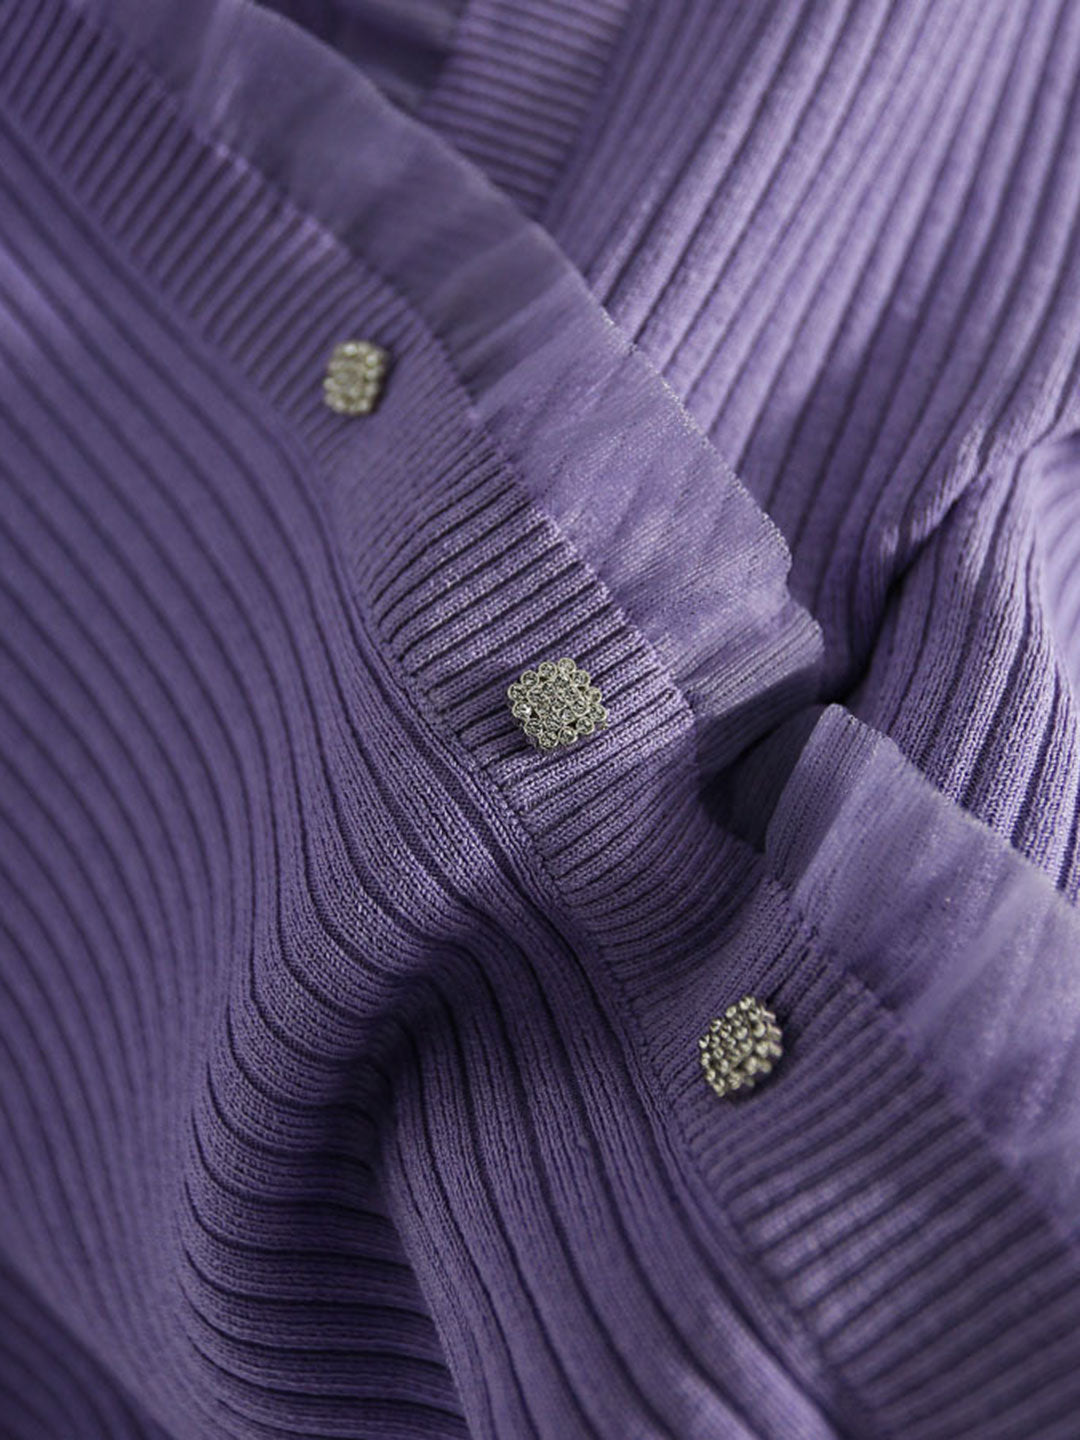 Sydney Elegant V-neck Drawstring Knitted Top-Purple